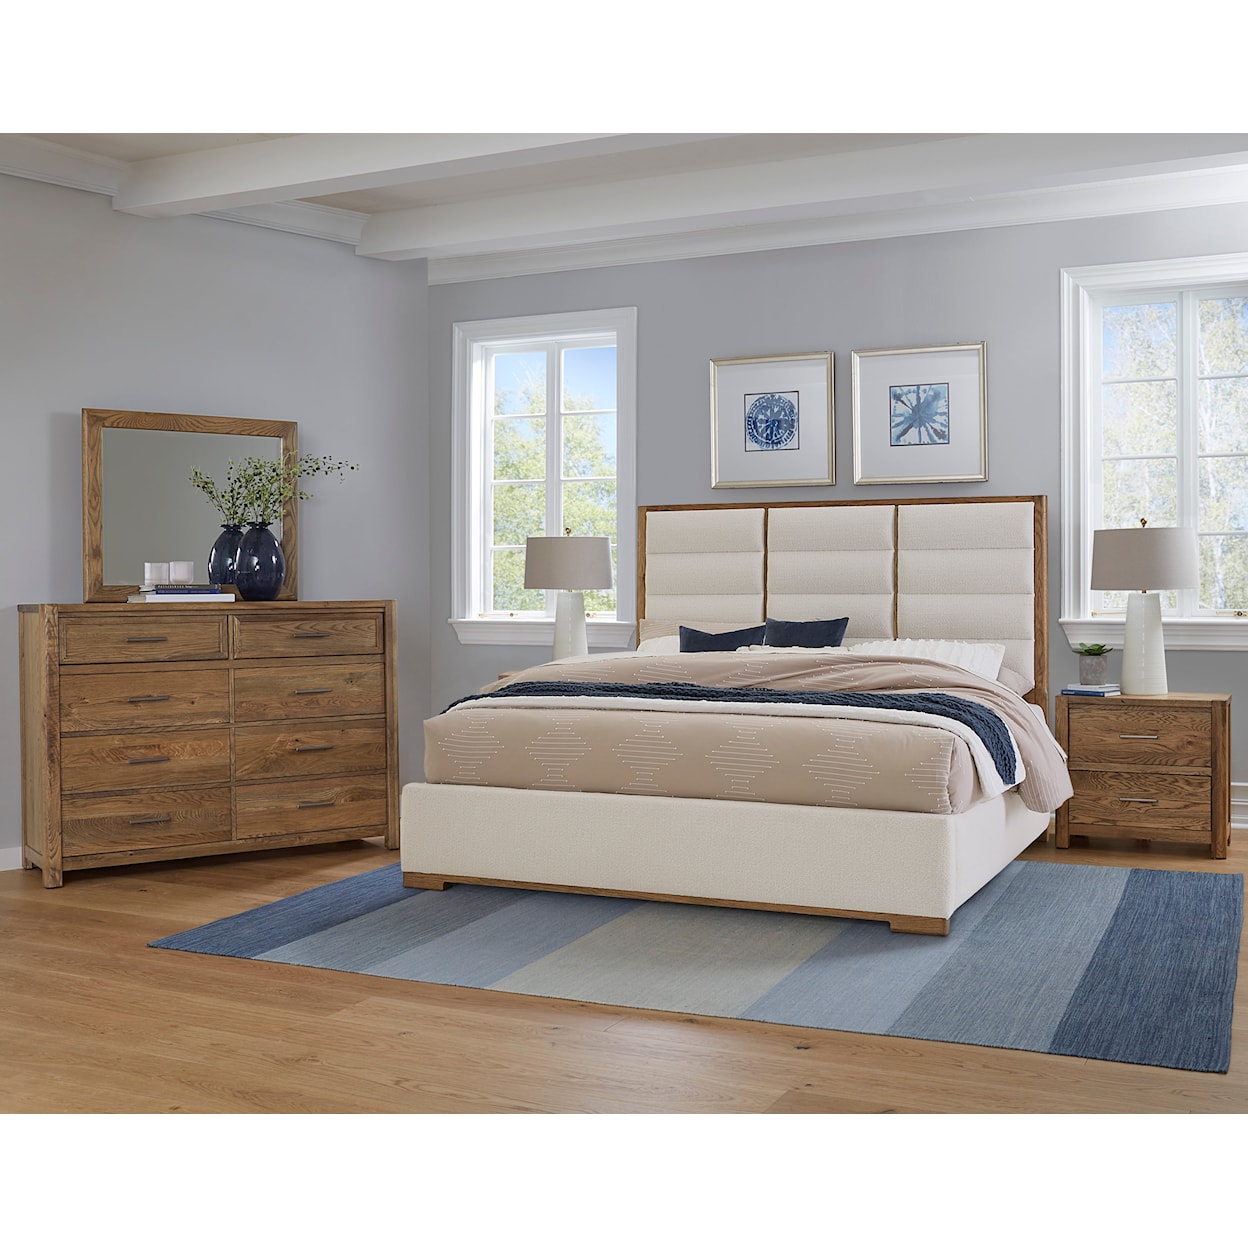 Vaughan Bassett Crafted Oak - Natural Oak Upholstered King Bedroom Set